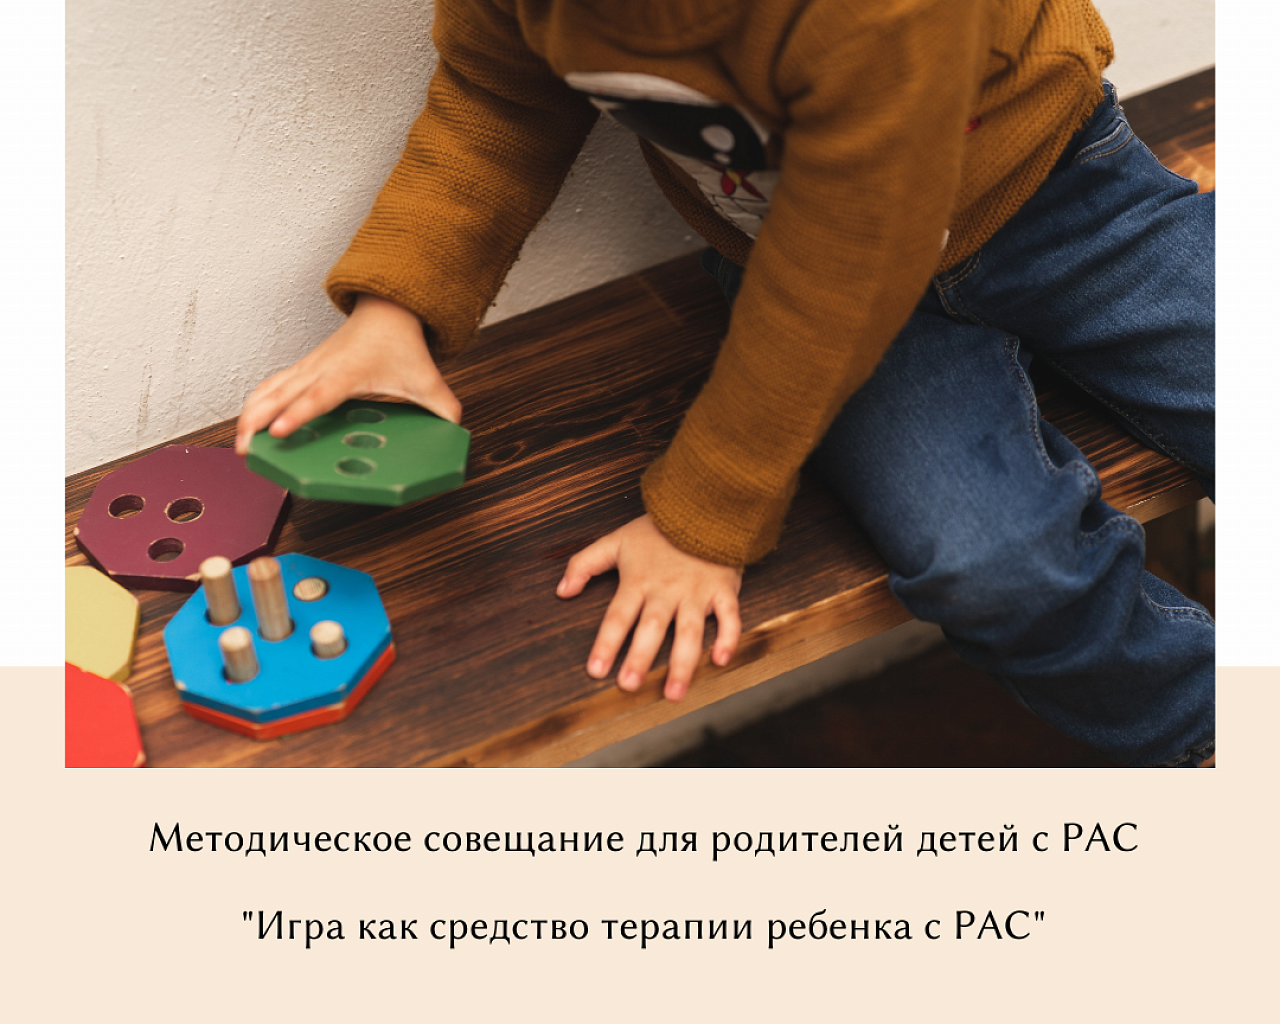 Методическое совещание для родителей детей с РАС "Игра как средство терапии ребенка с РАС"